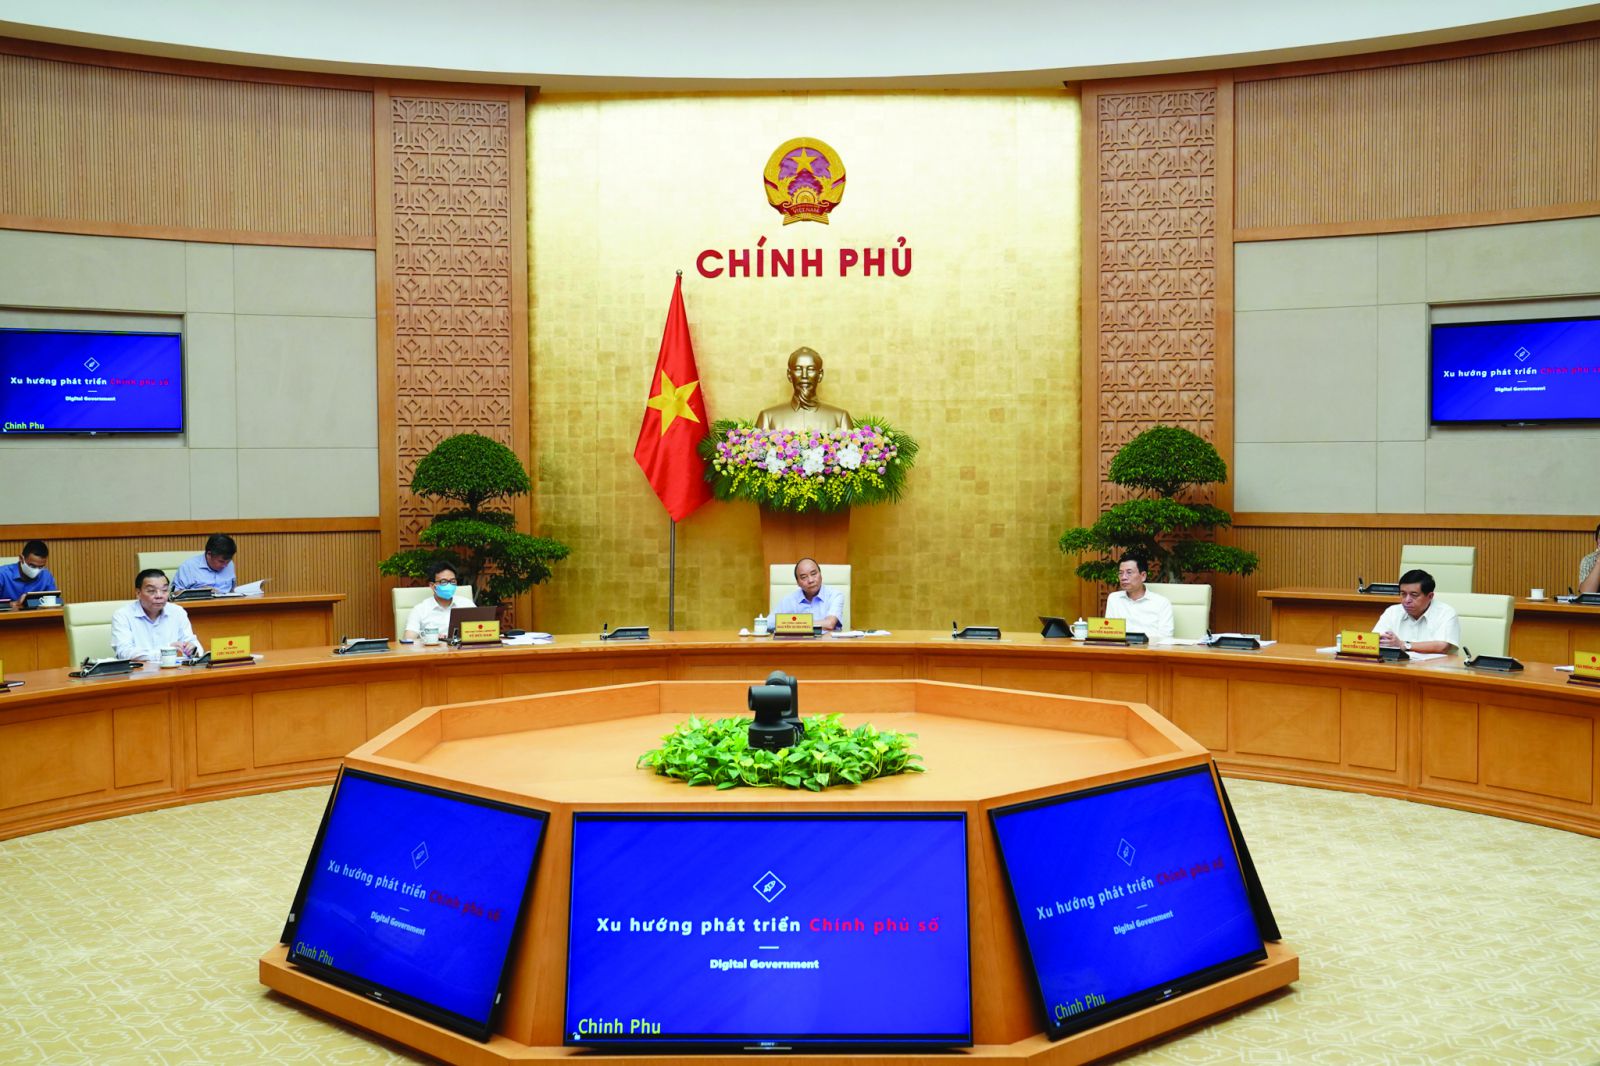  Thủ tướng Nguyễn Xuân Phúc, Chủ tịch Ủy ban Quốc gia về Chính phủ điện tử (CPĐT) chủ trì hội nghị trực tuyến về Chính phủ điện tử.